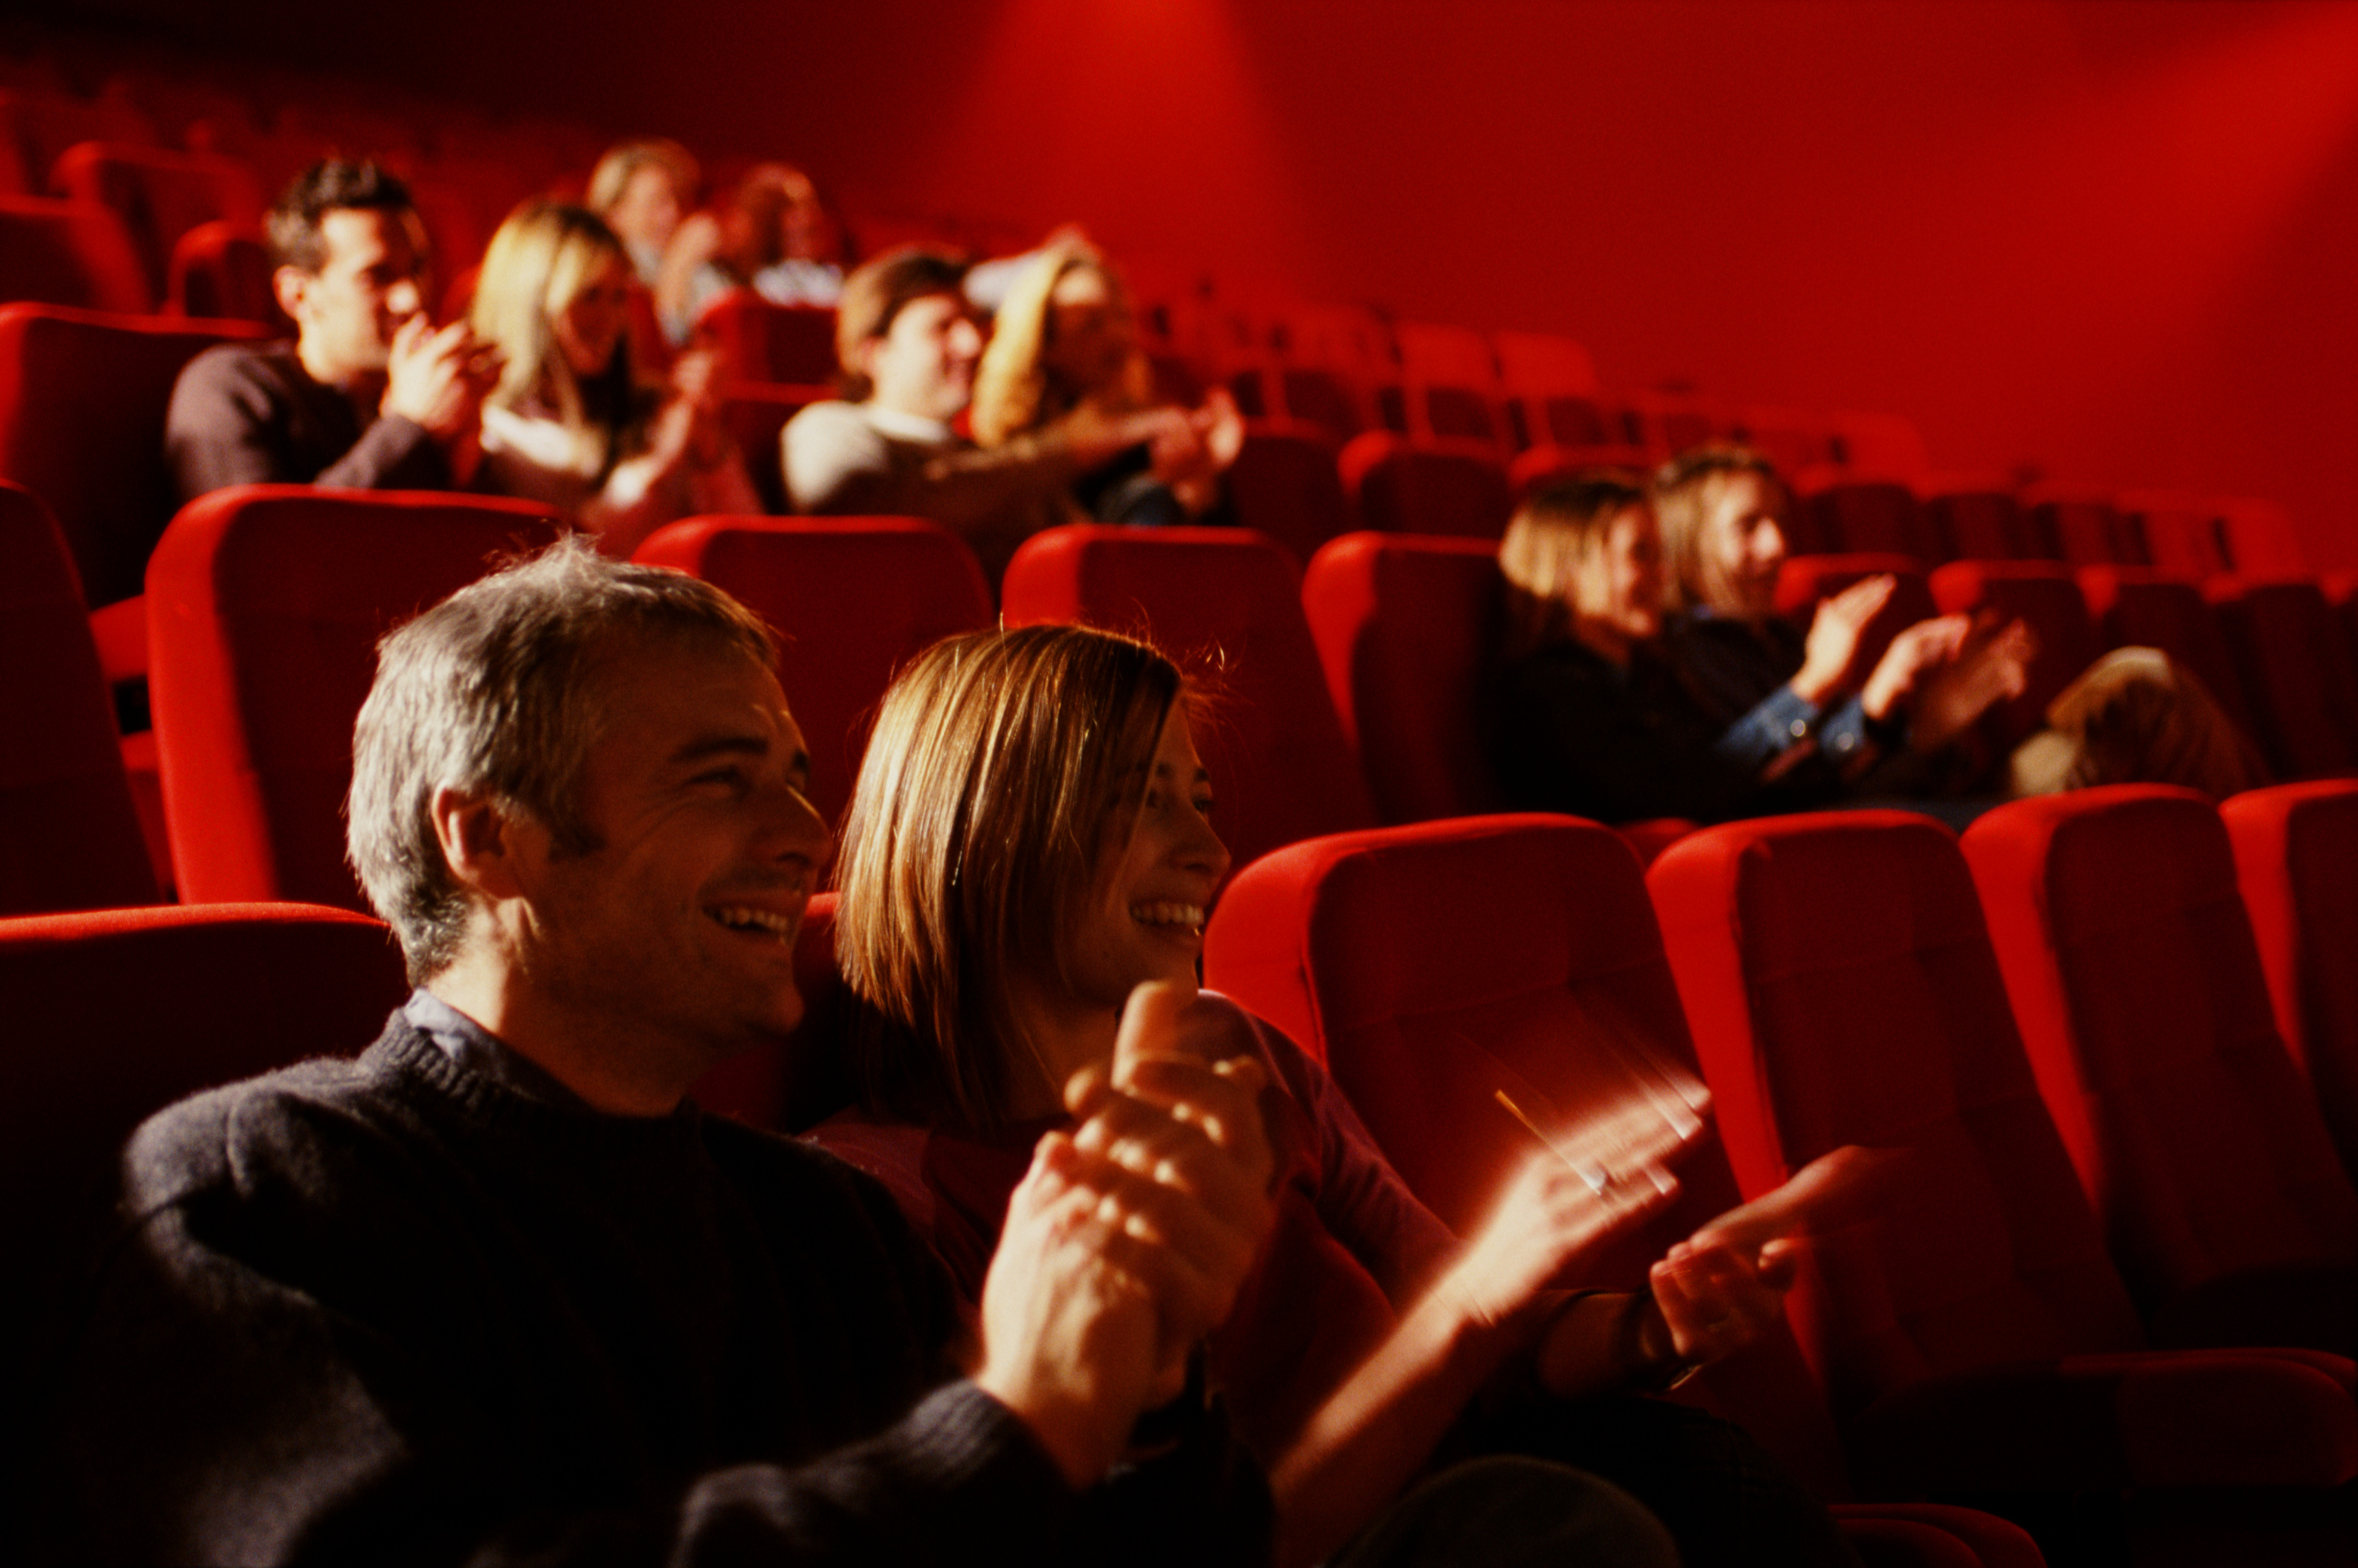 В течение всего спектакля зрители. Поход в театр. Люди сидят в кинотеатре. Зрители в зале. Зрительный зал с людьми.